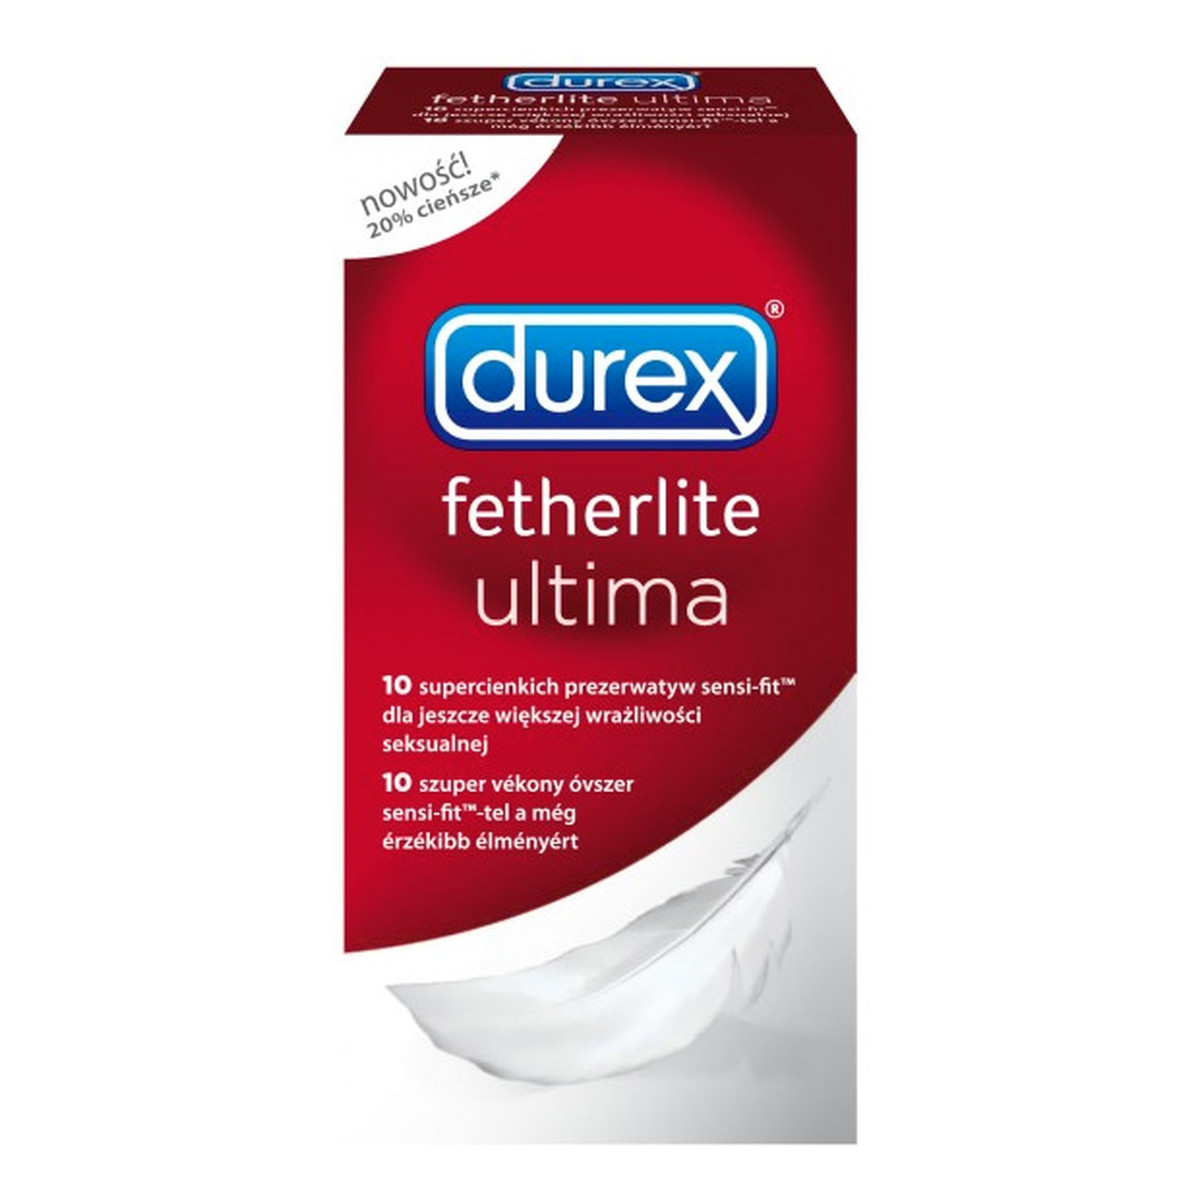 Durex Fetherlite Ultima Prezerwatywy 10szt.